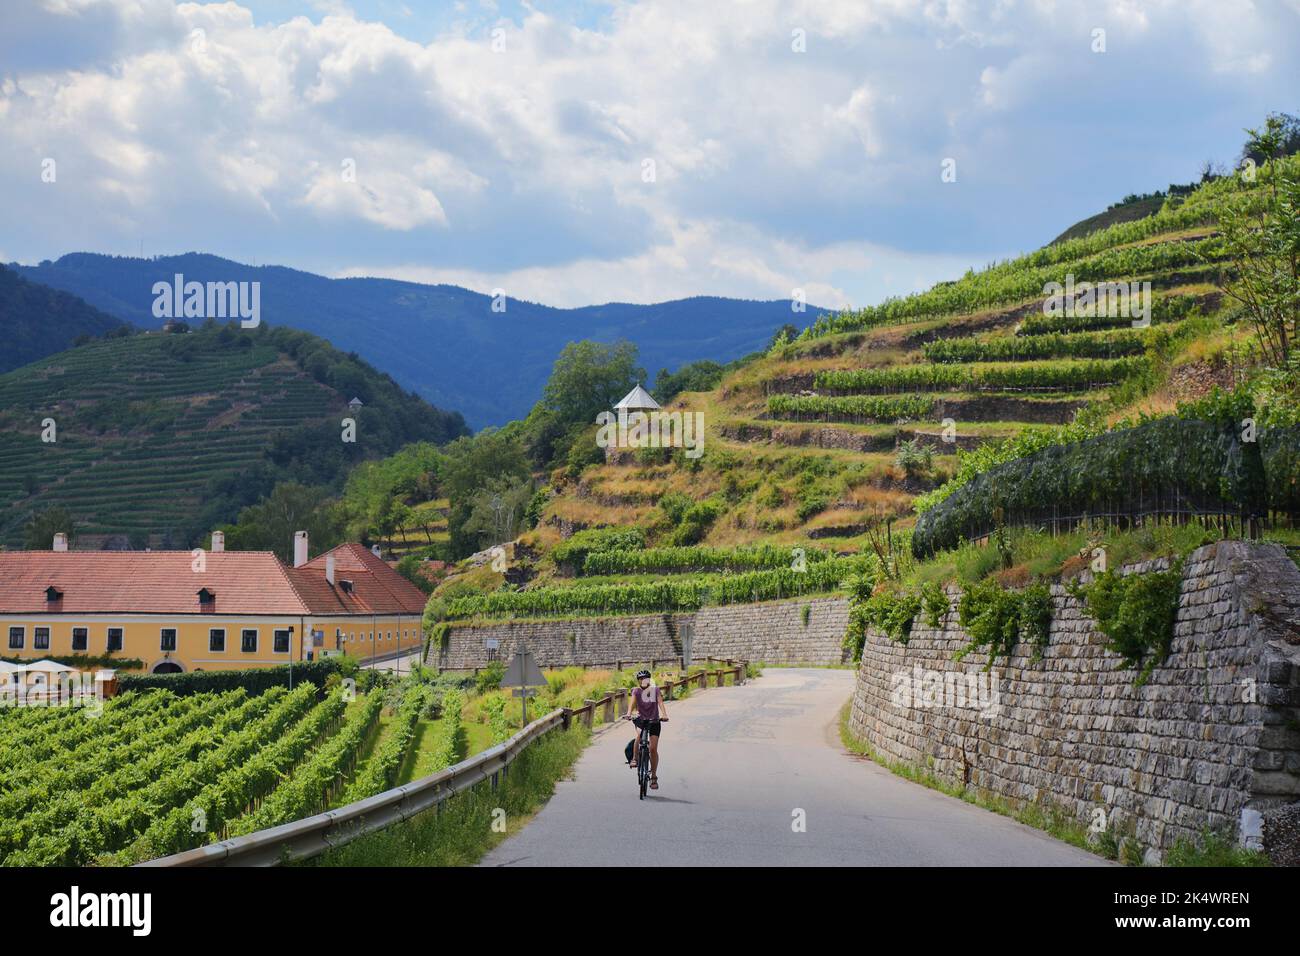 Vélo touristique parmi les vignobles de la région viticole de Wachau en Autriche. Donauradweg (route des vélos du Danube) près de Spitz. Banque D'Images